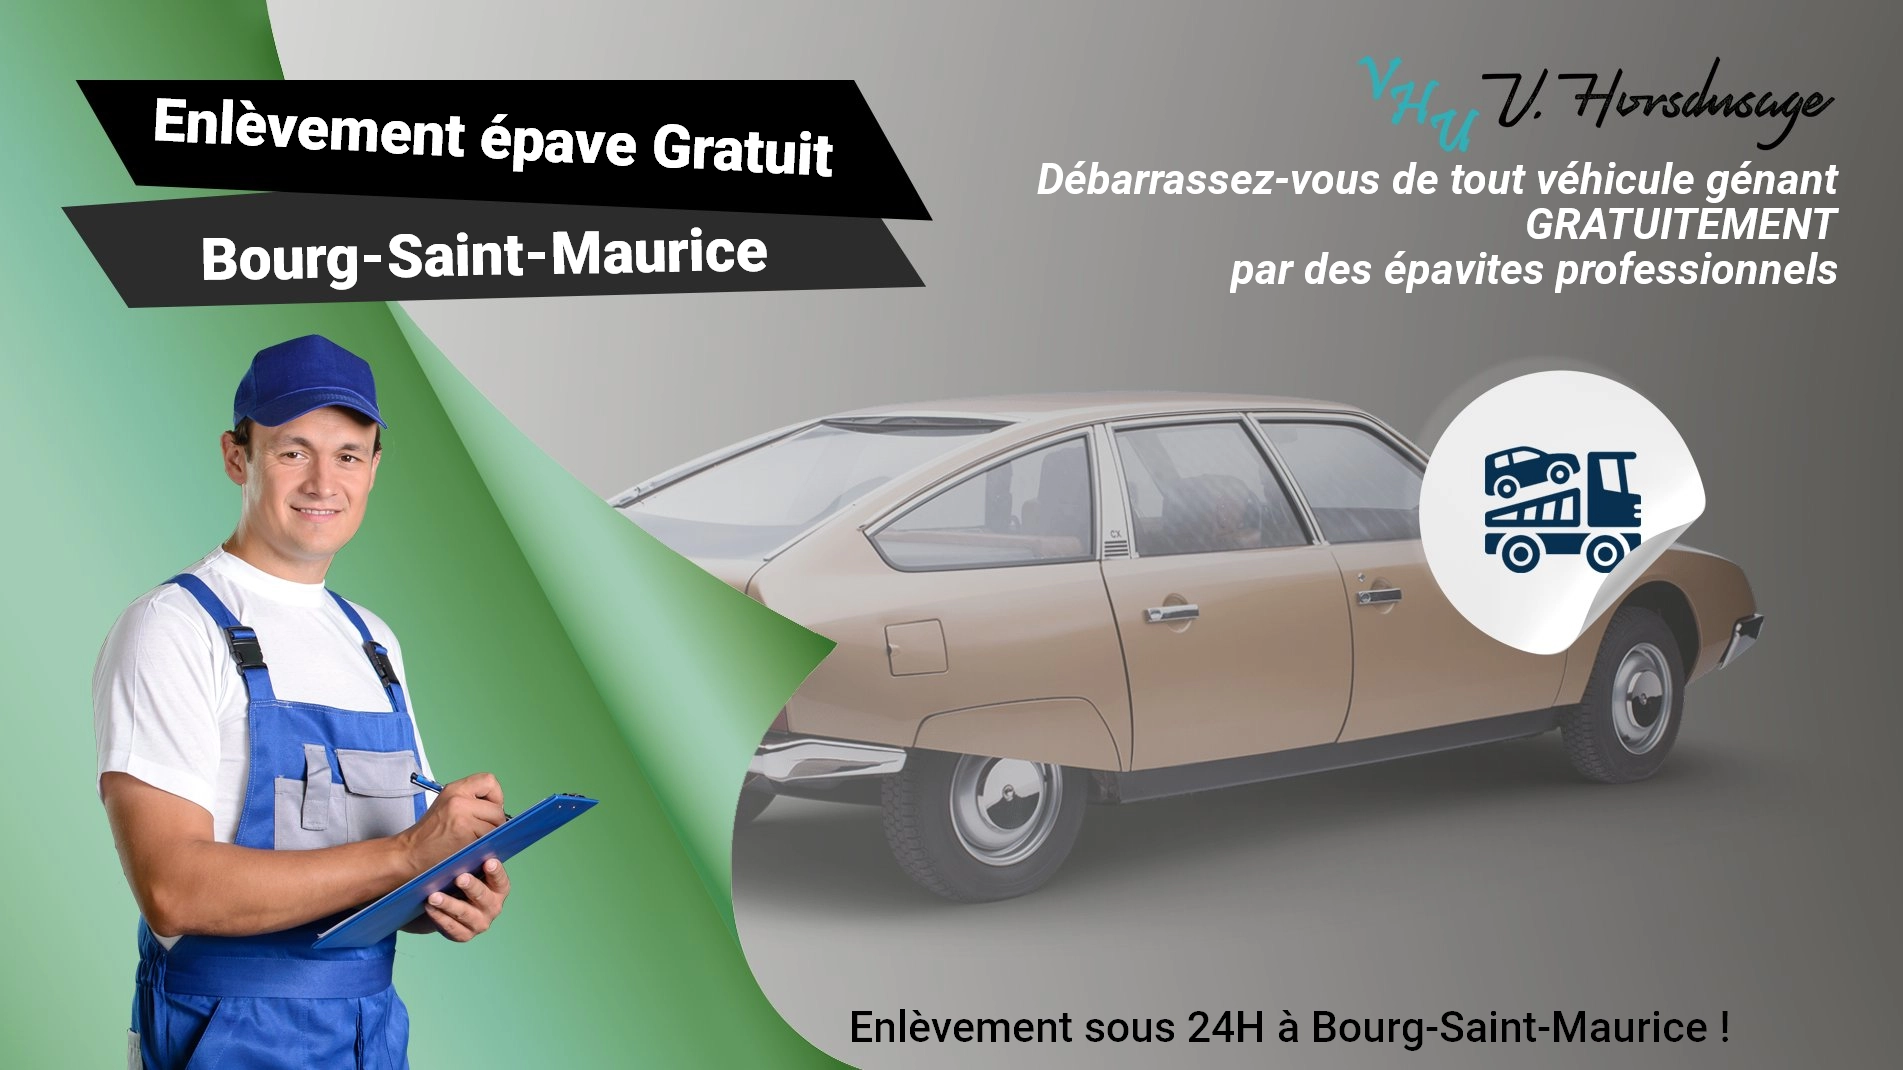 Pour un enlèvement gratuit à Bourg-Saint-Maurice, contactez nos épavistes agréé VHU